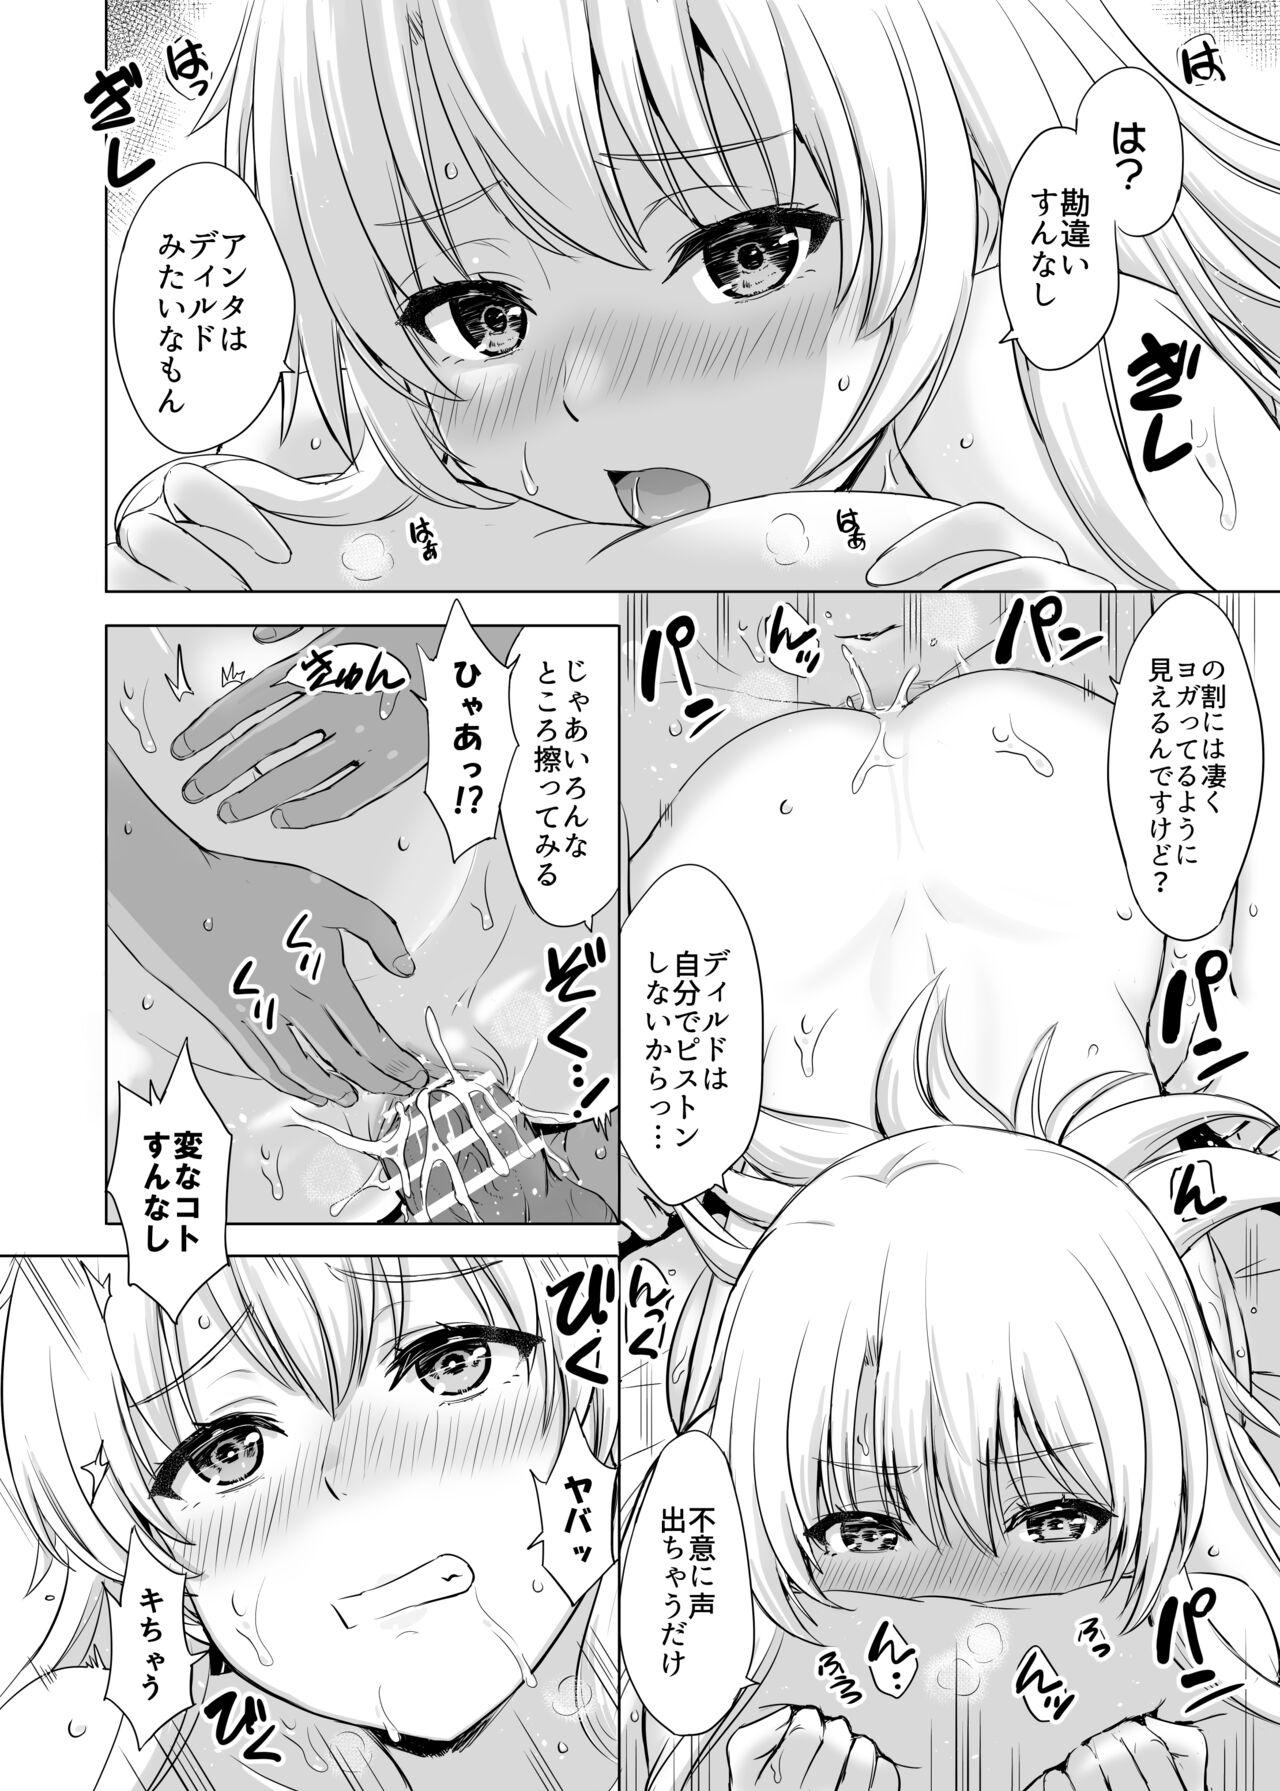 Real Amatuer Porn Aashi-san Manga Sono 1 - Yahari ore no seishun love come wa machigatteiru Big Cock - Page 2